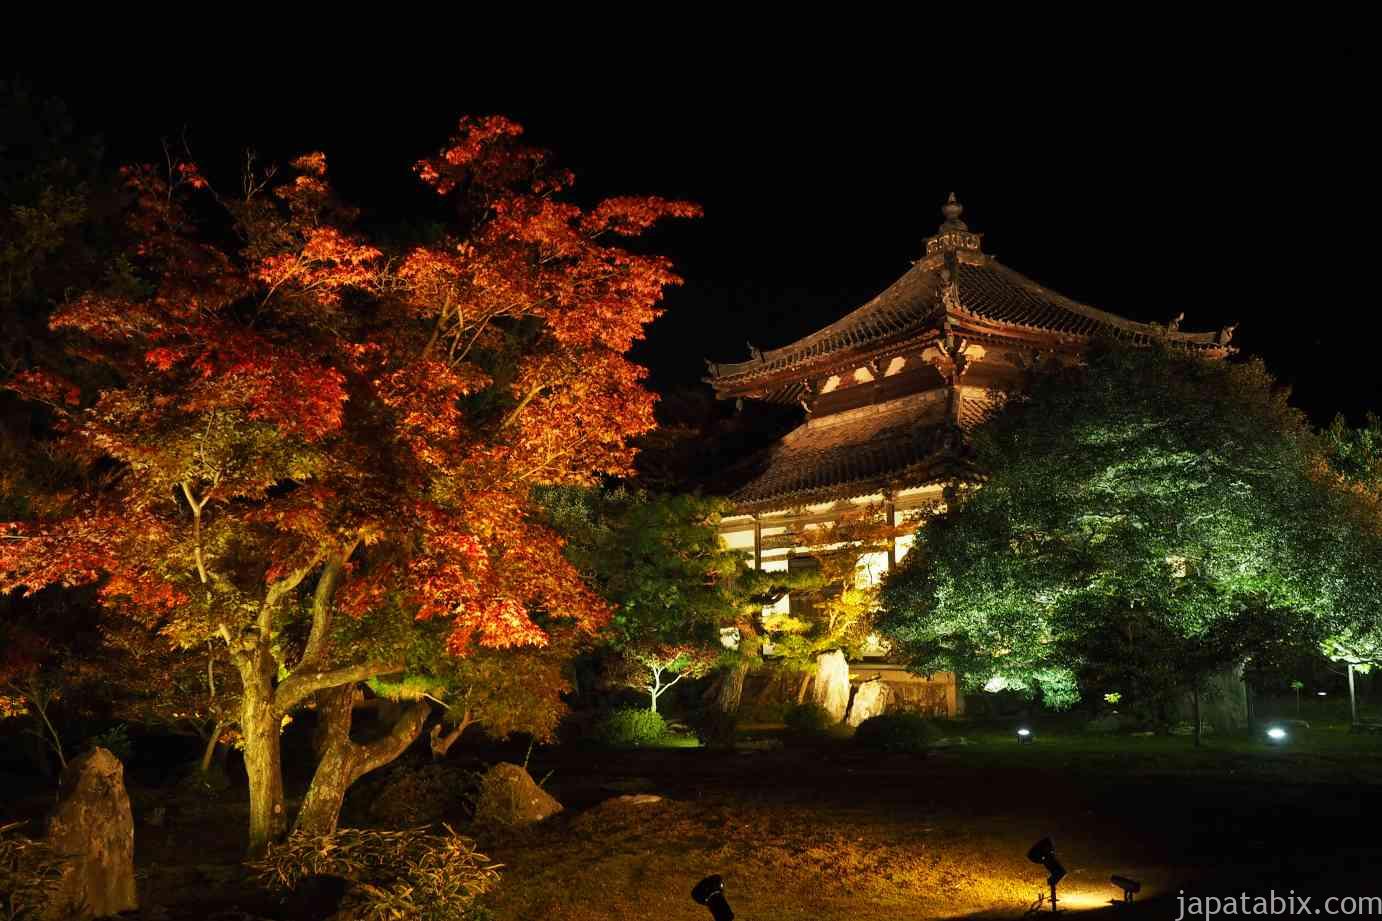 京都 鹿王院の紅葉21年版 闇に浮かぶ舎利殿が見所 人数限定の夜間特別拝観を解説 紅葉見頃や見どころもご紹介 じゃぱたびっくす